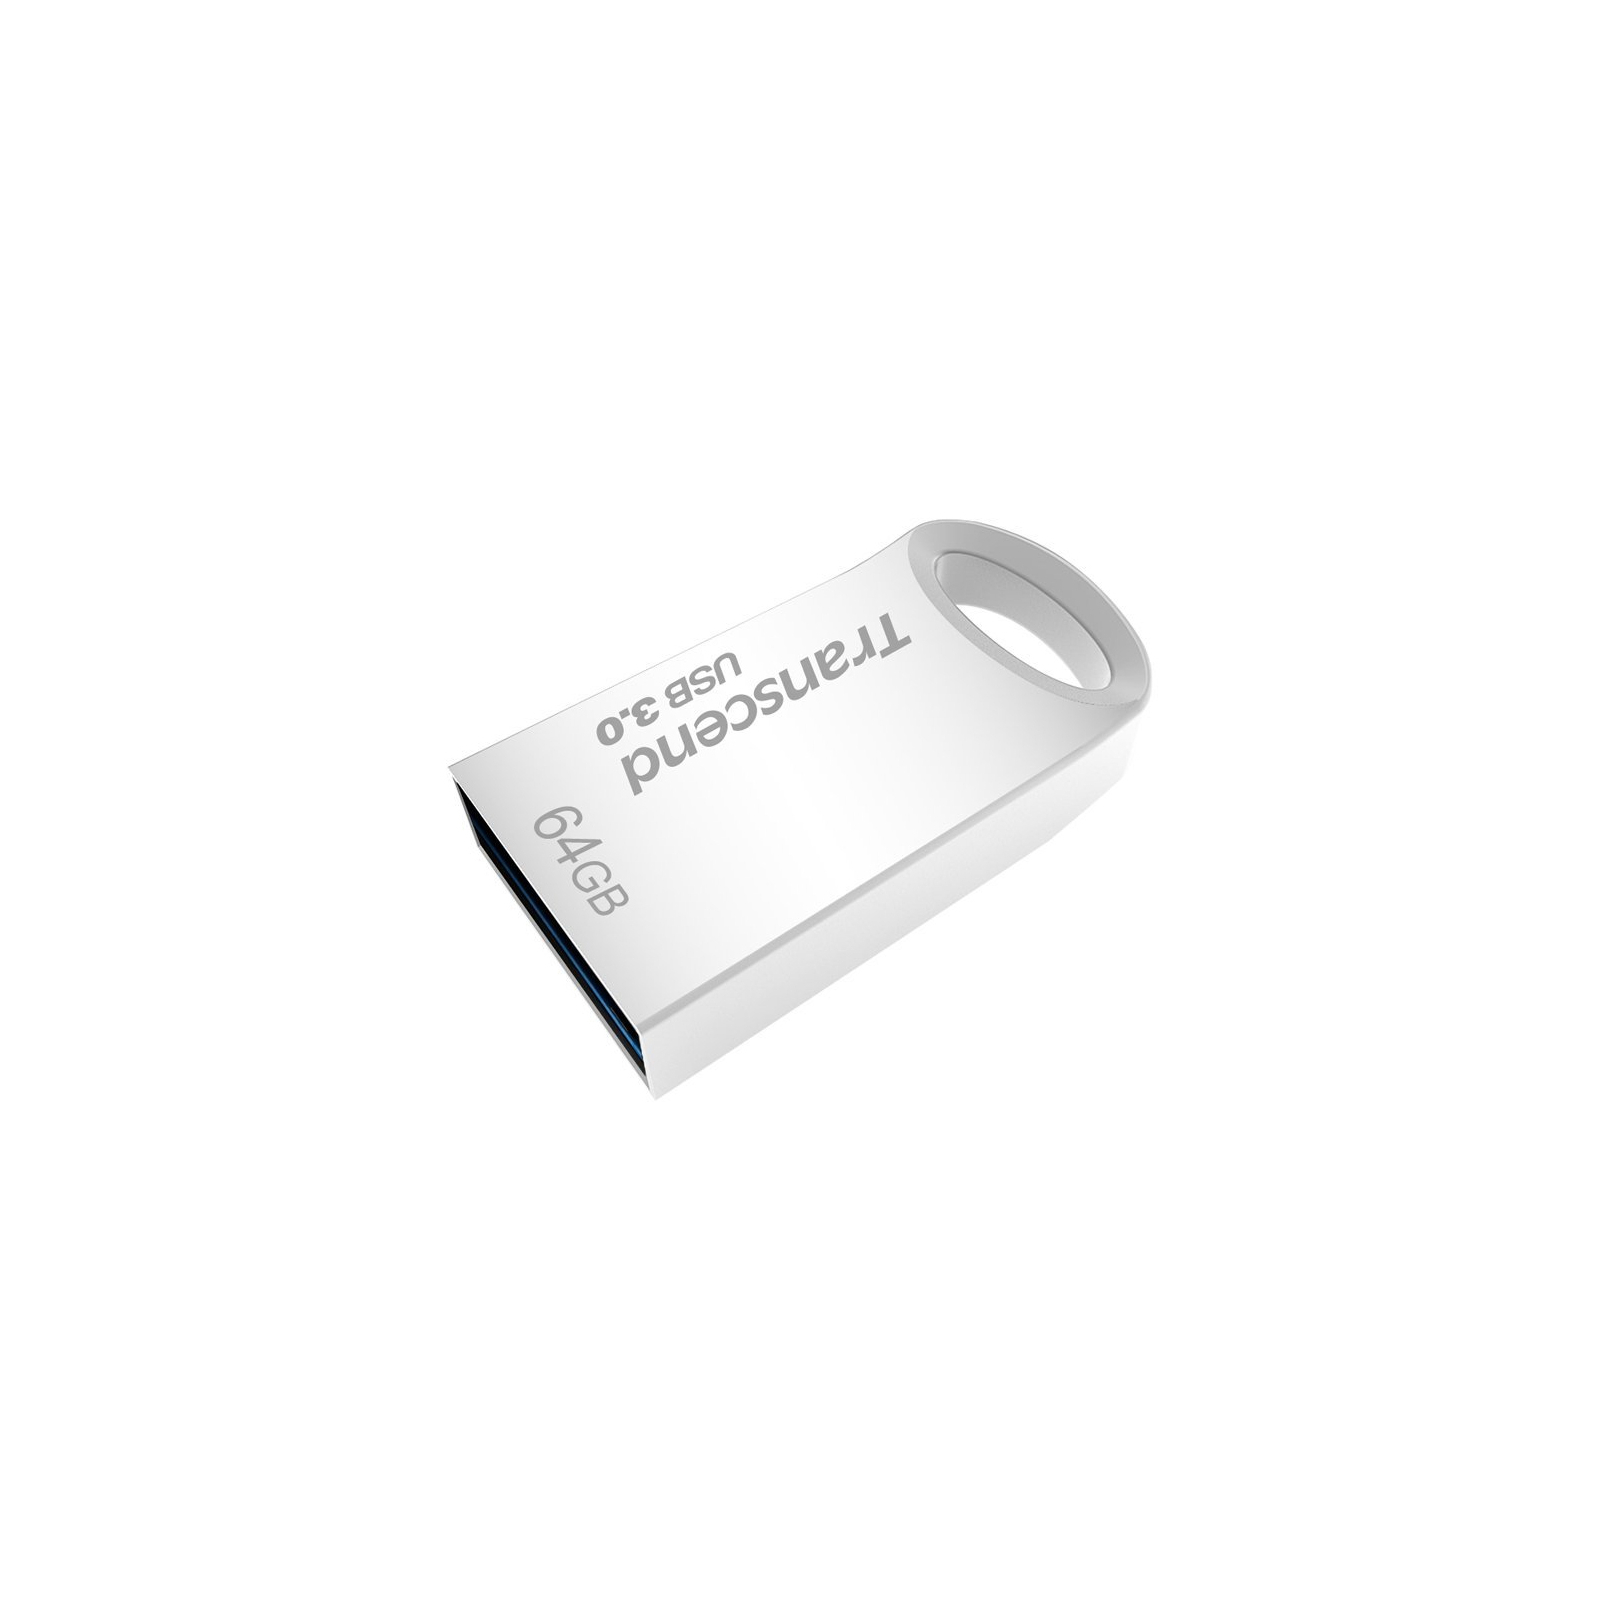 USB флеш накопитель Transcend 128GB JetFlash 710 Silver USB 3.0 (TS128GJF710S) изображение 2